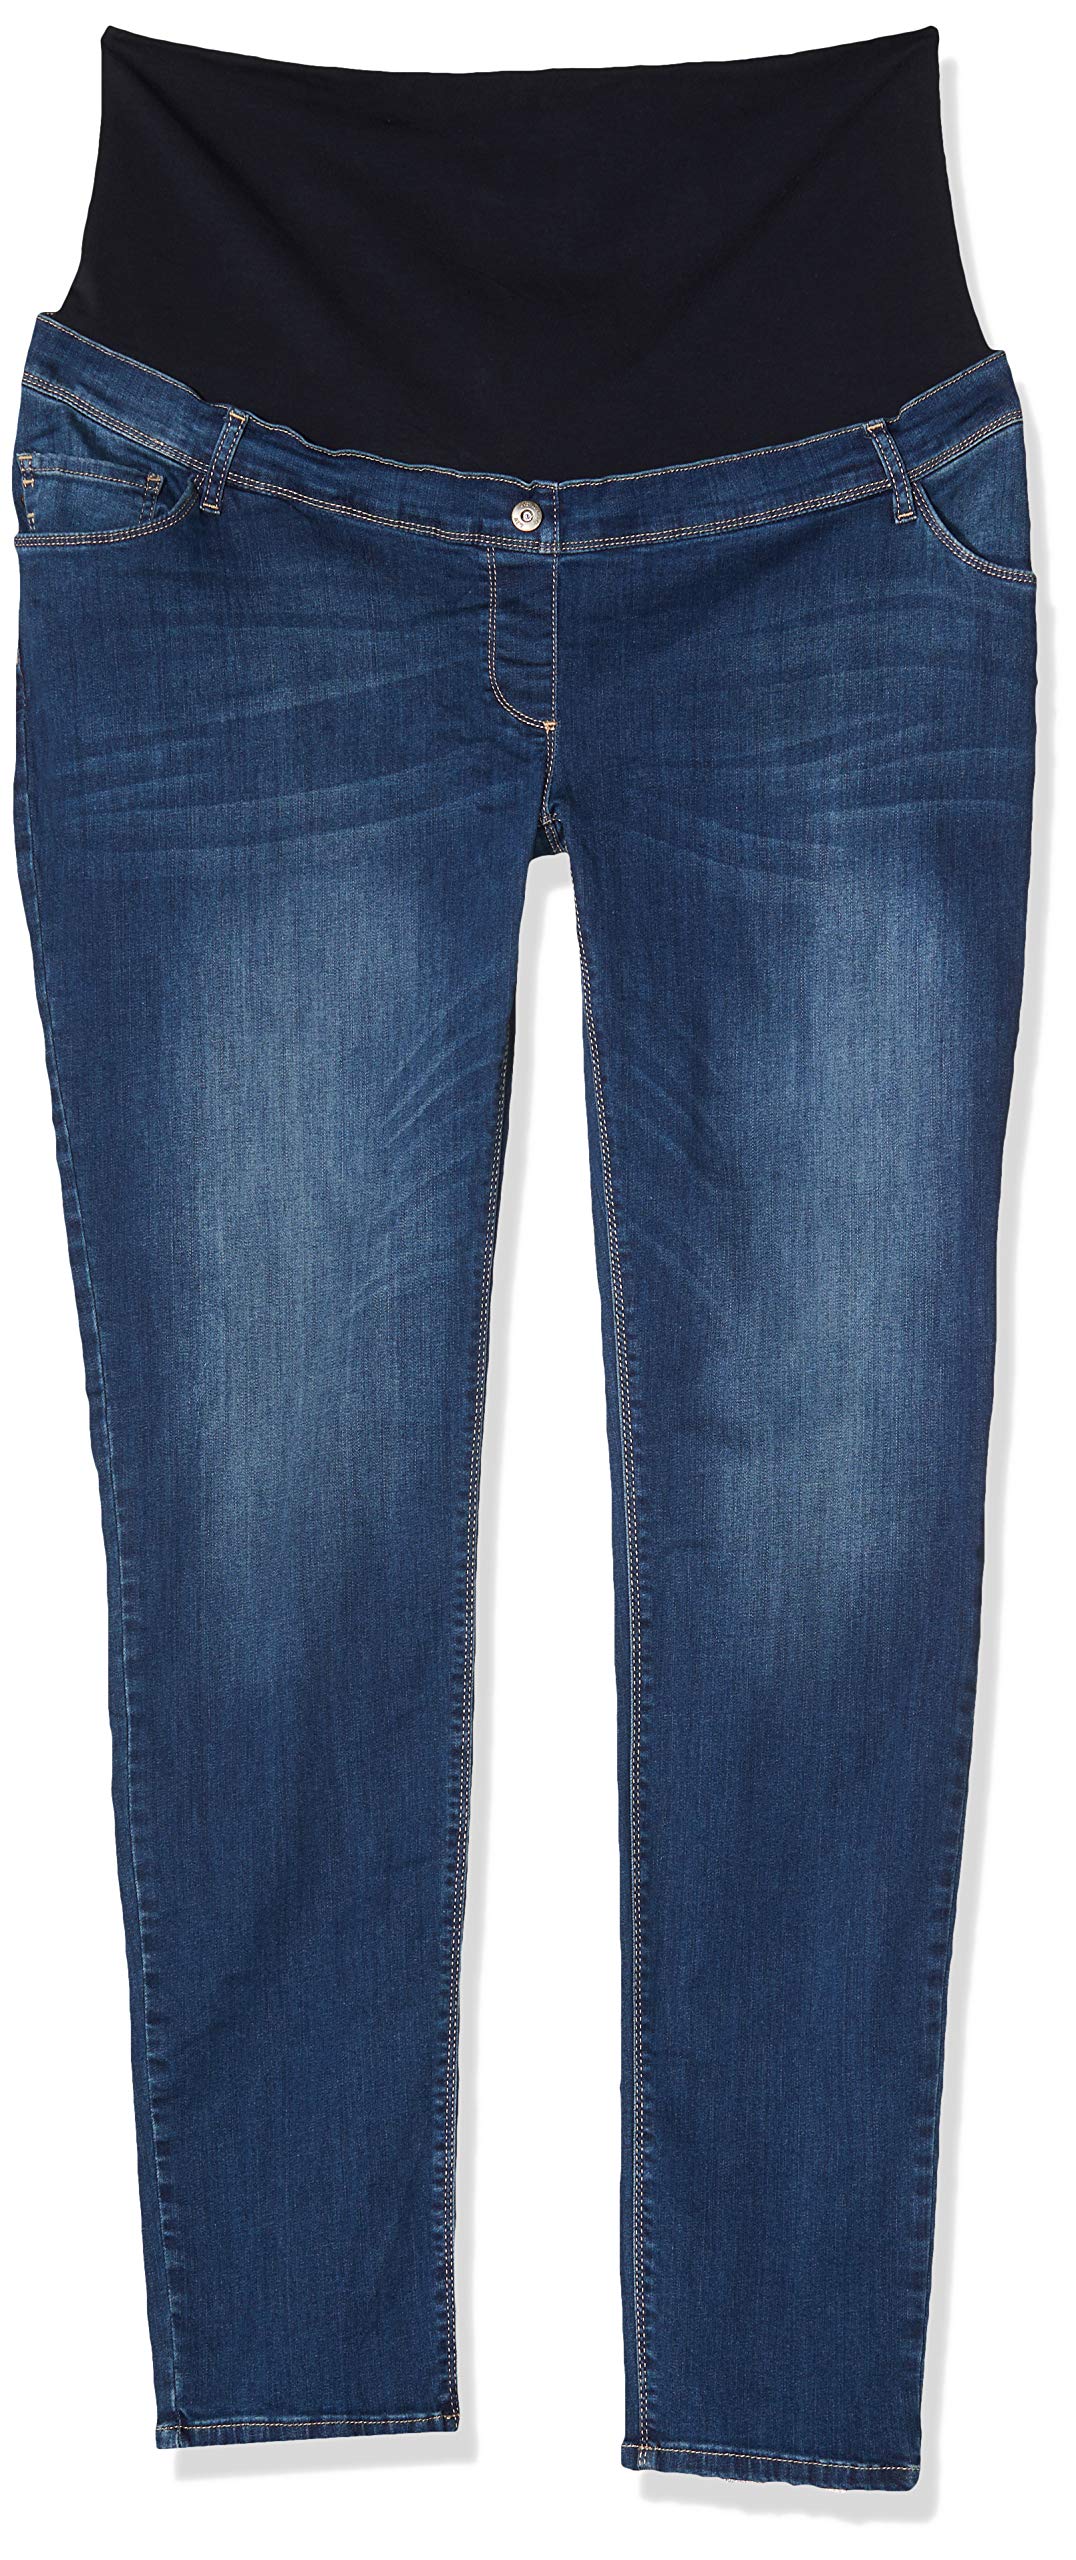 Love2wait Damen Jeans Sophia Plus Umstandsjeans, Blau (Stone Wash 021), W44/L34 (Herstellergröße: 44)